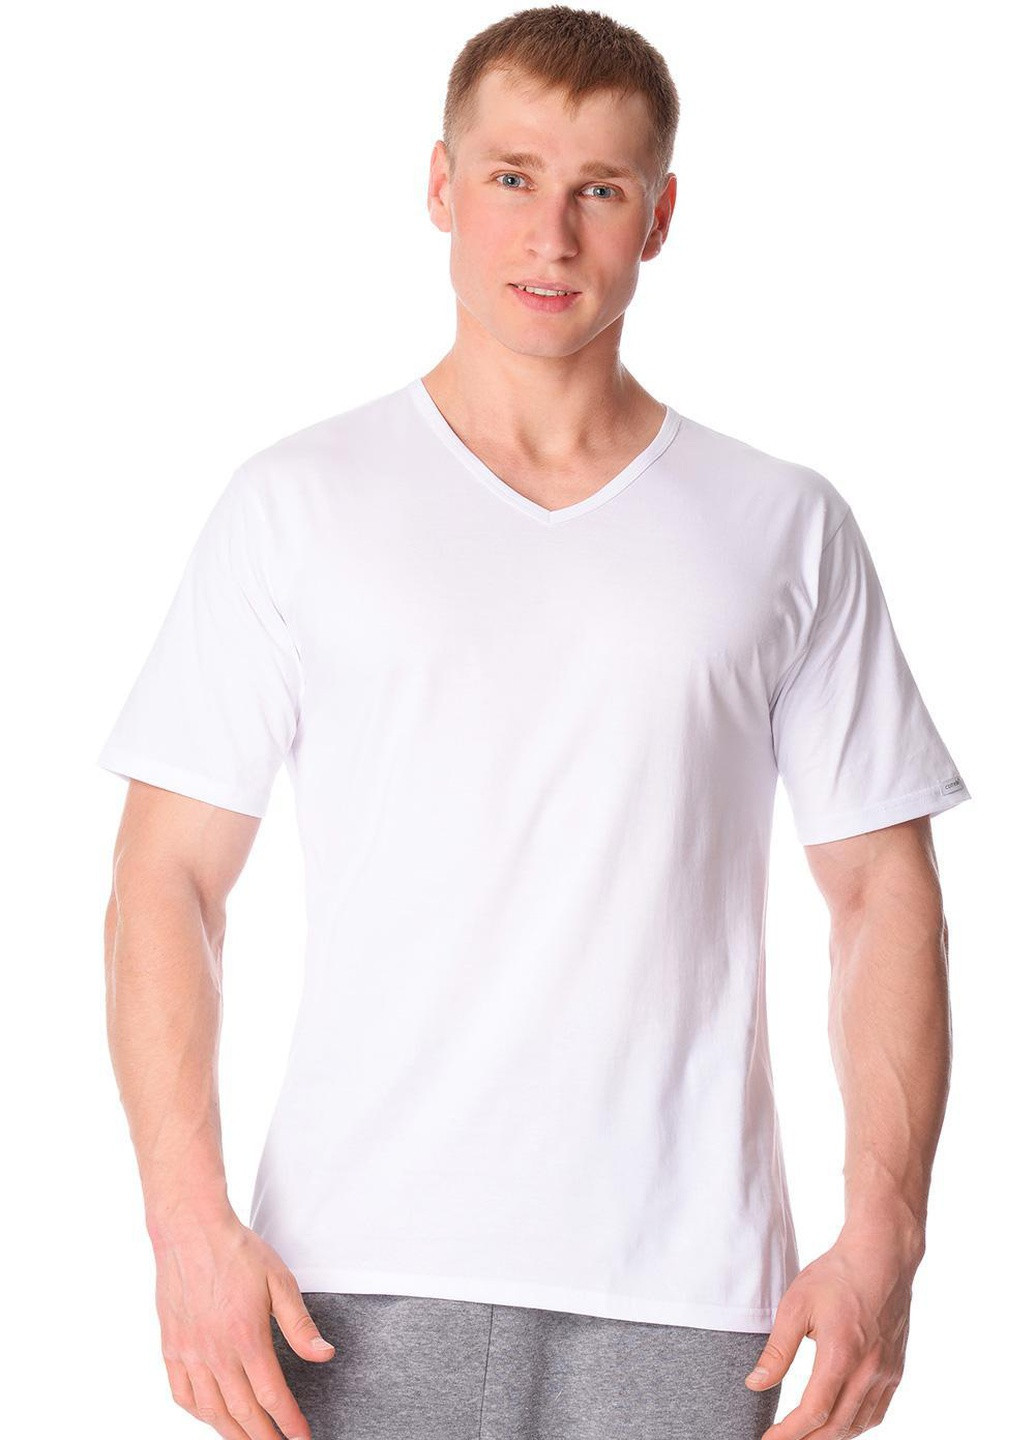 Біла футболка чоловіча new s білий 201 Cornette